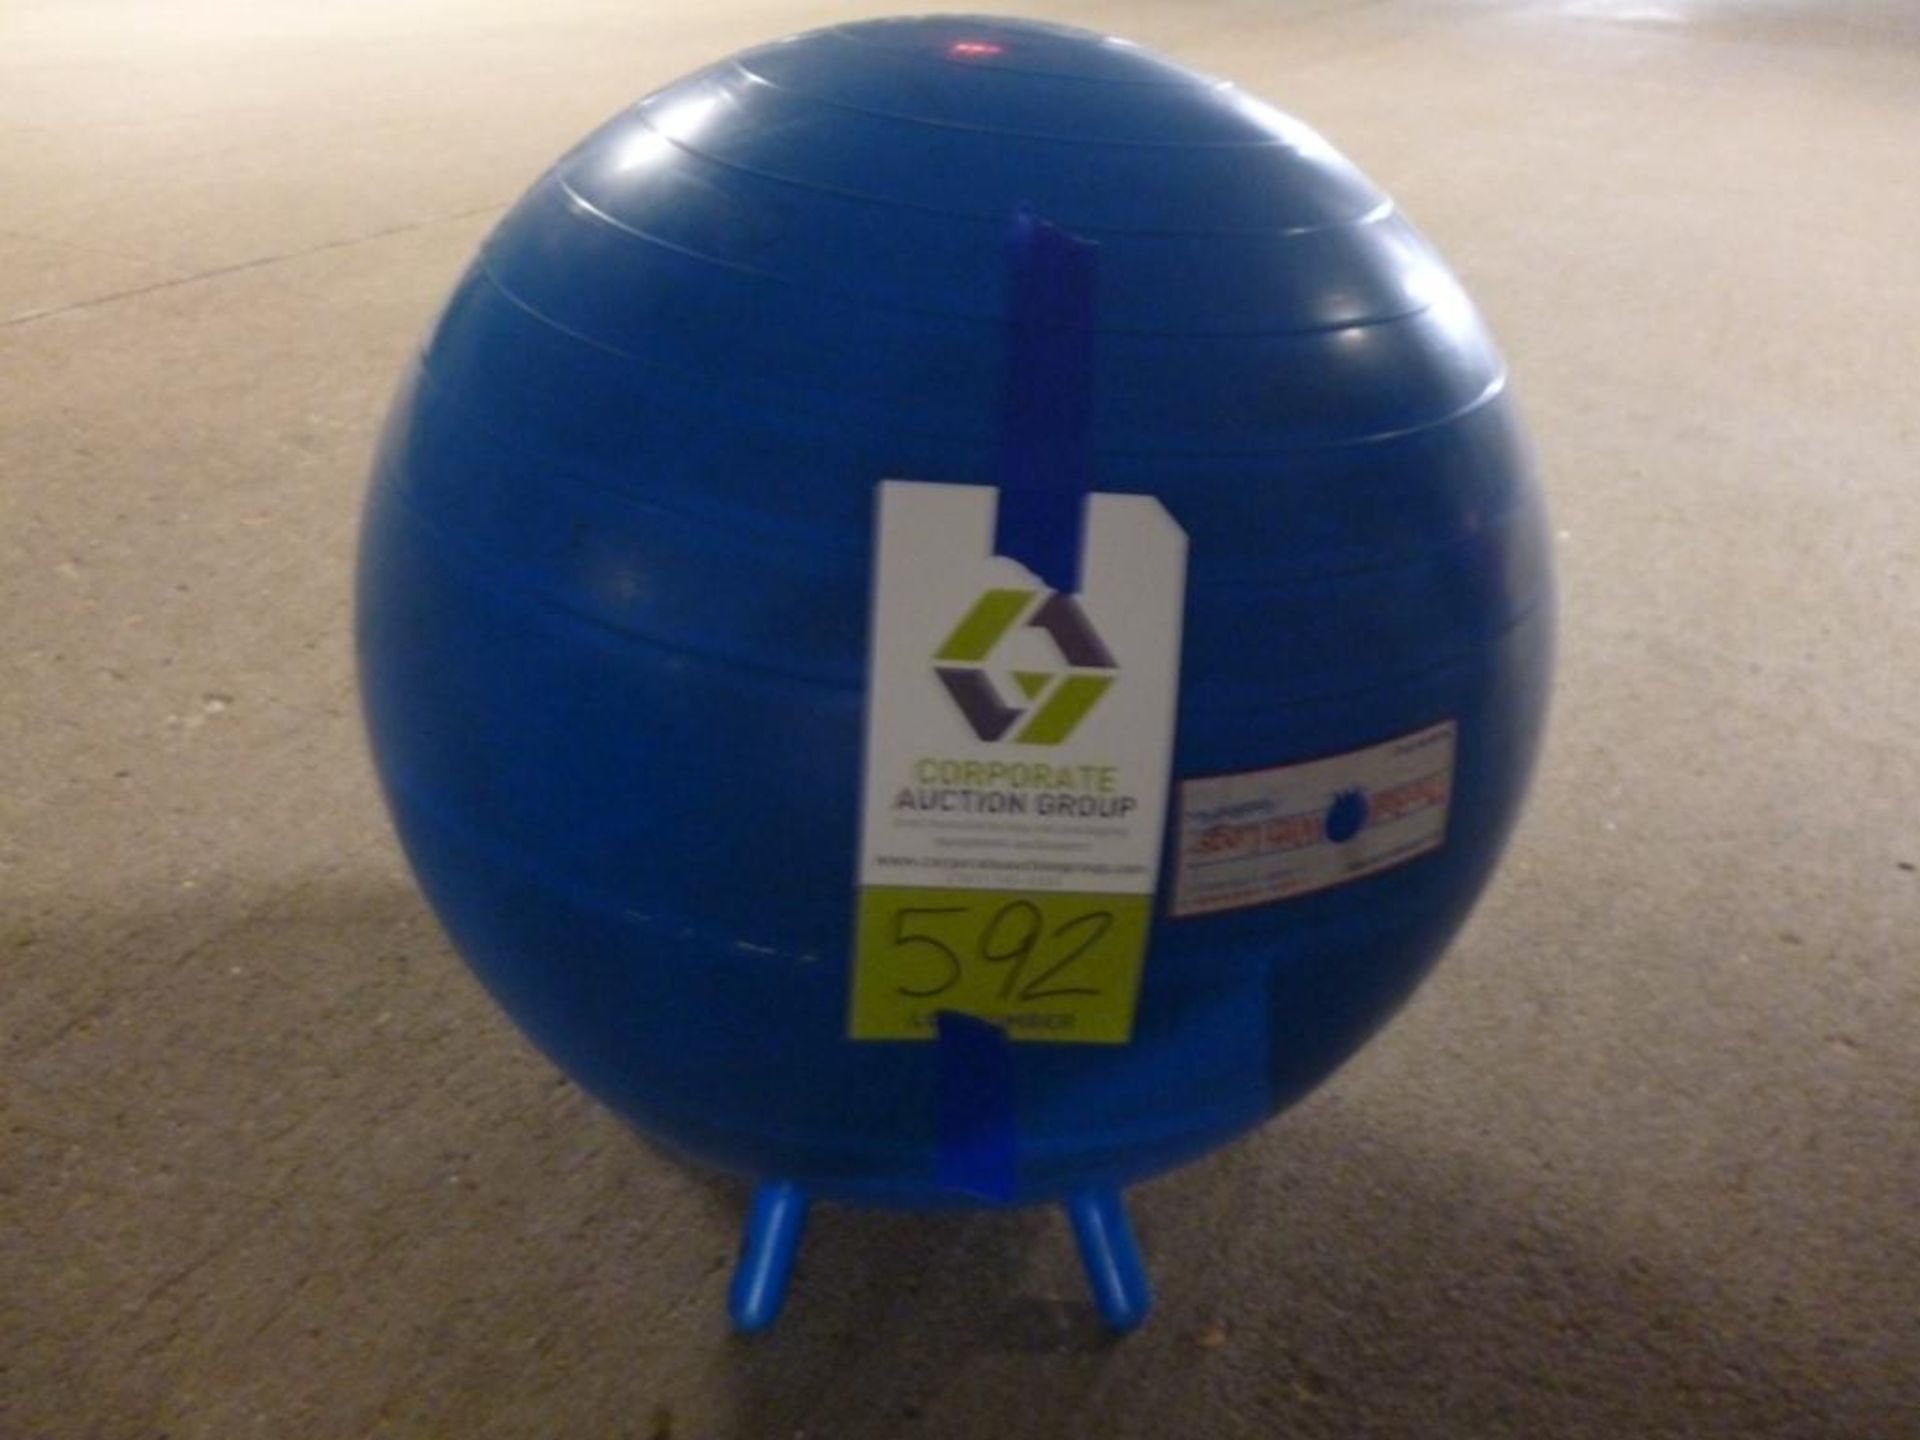 Manufacturer: - Blue Exercise Ball - Model Number: